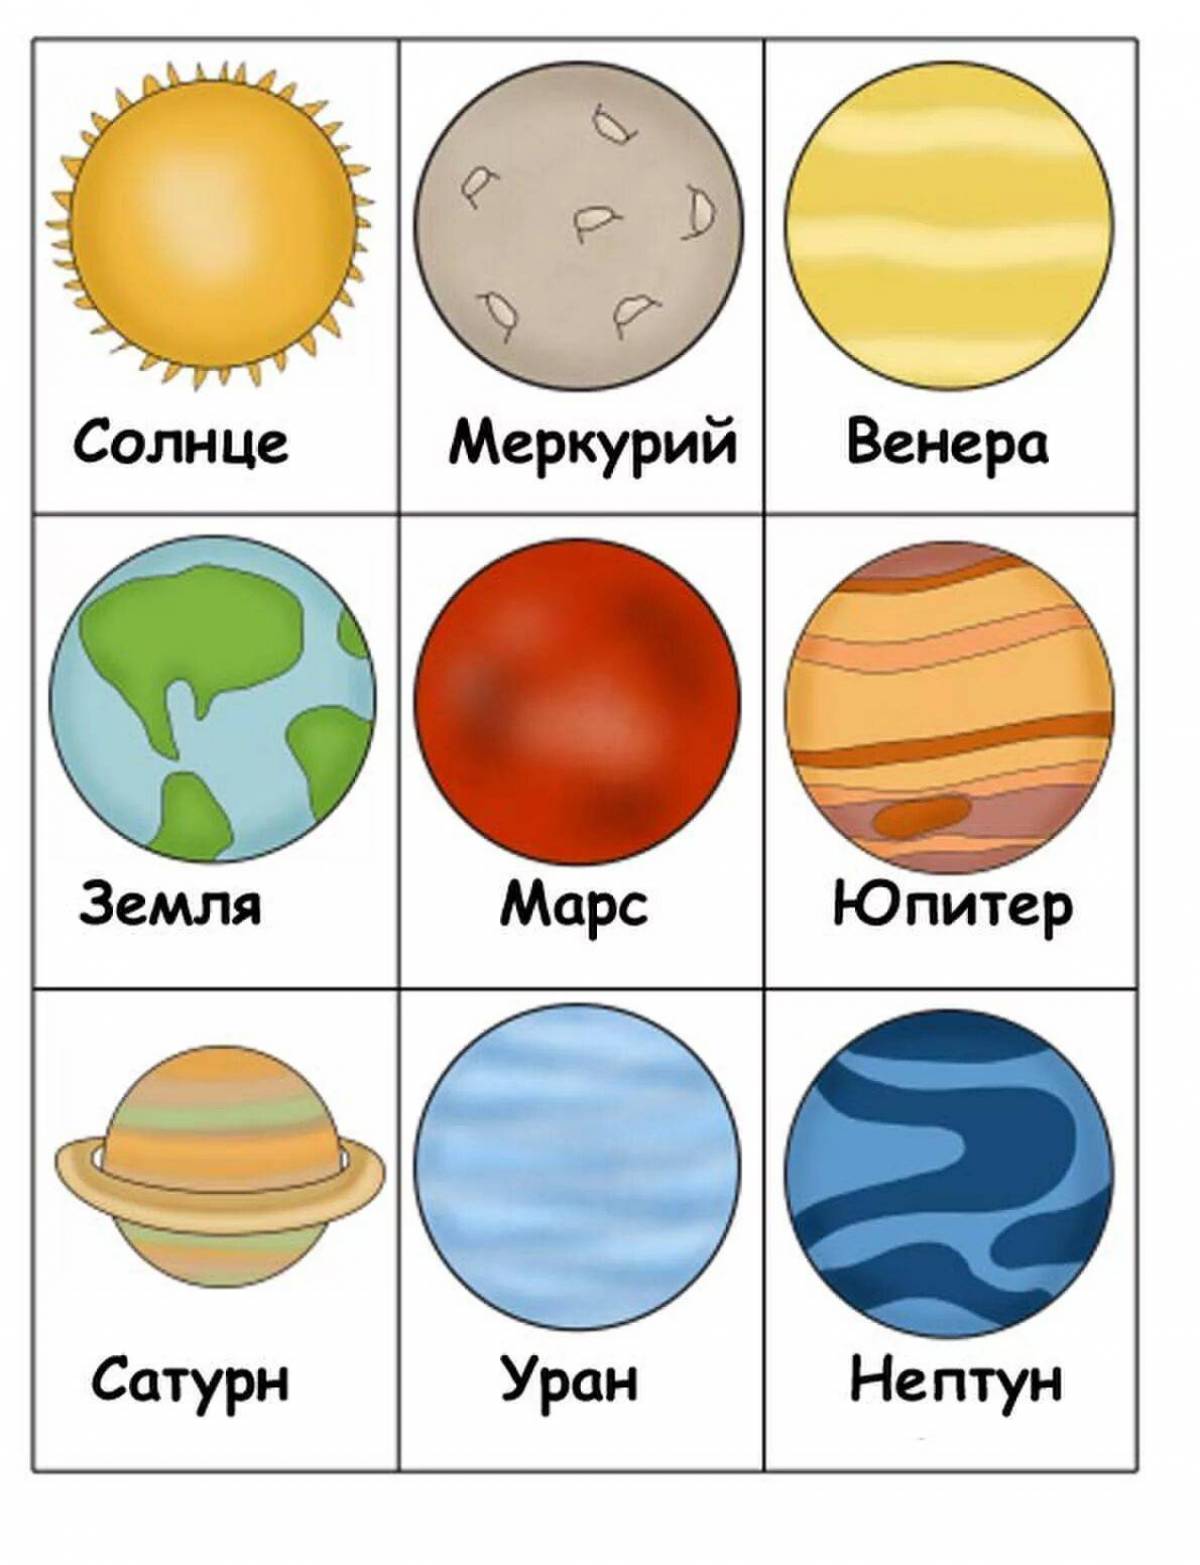 Картинки планеты солнечной системы для детей распечатать. Планеты солнечной системы для детей. Планеты с названием для дошкольников. Карточки планеты солнечной системы. Планеты Солнечная системы д я детей.